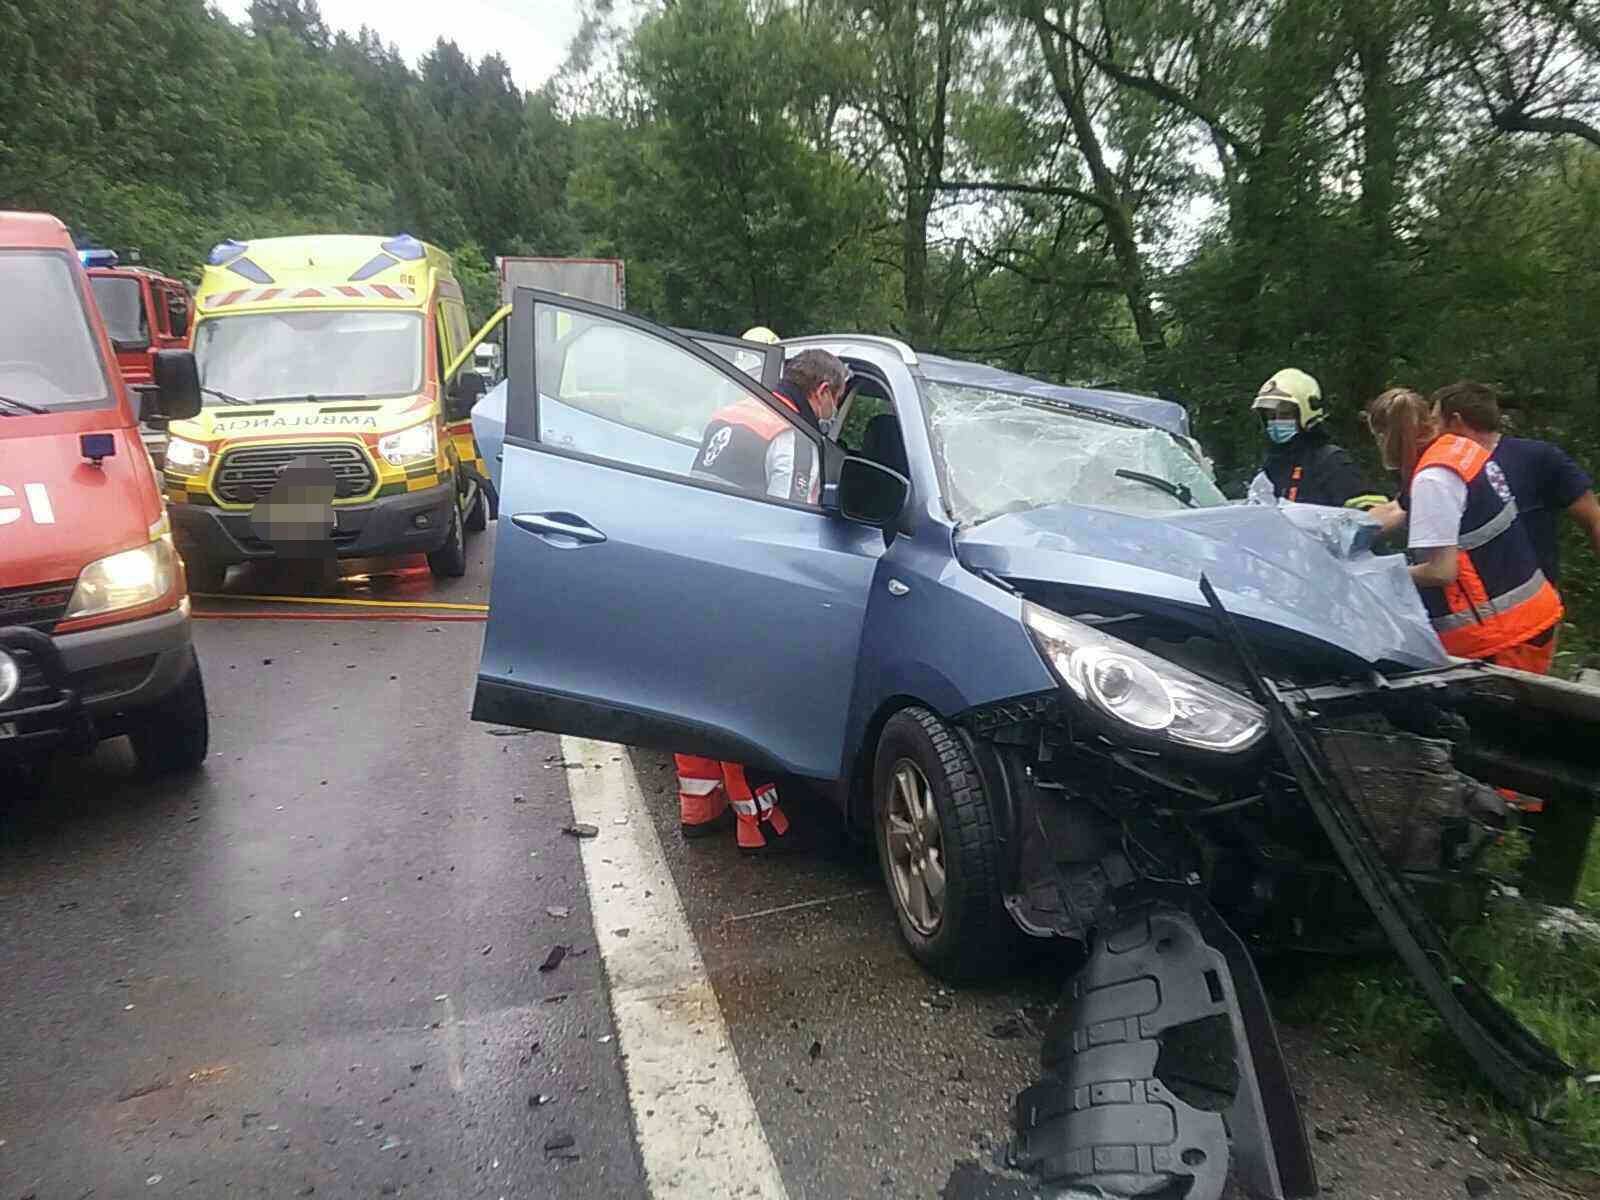 Hasii zasahuj pri dopravnej nehode v obci Kysuck Lieskovec